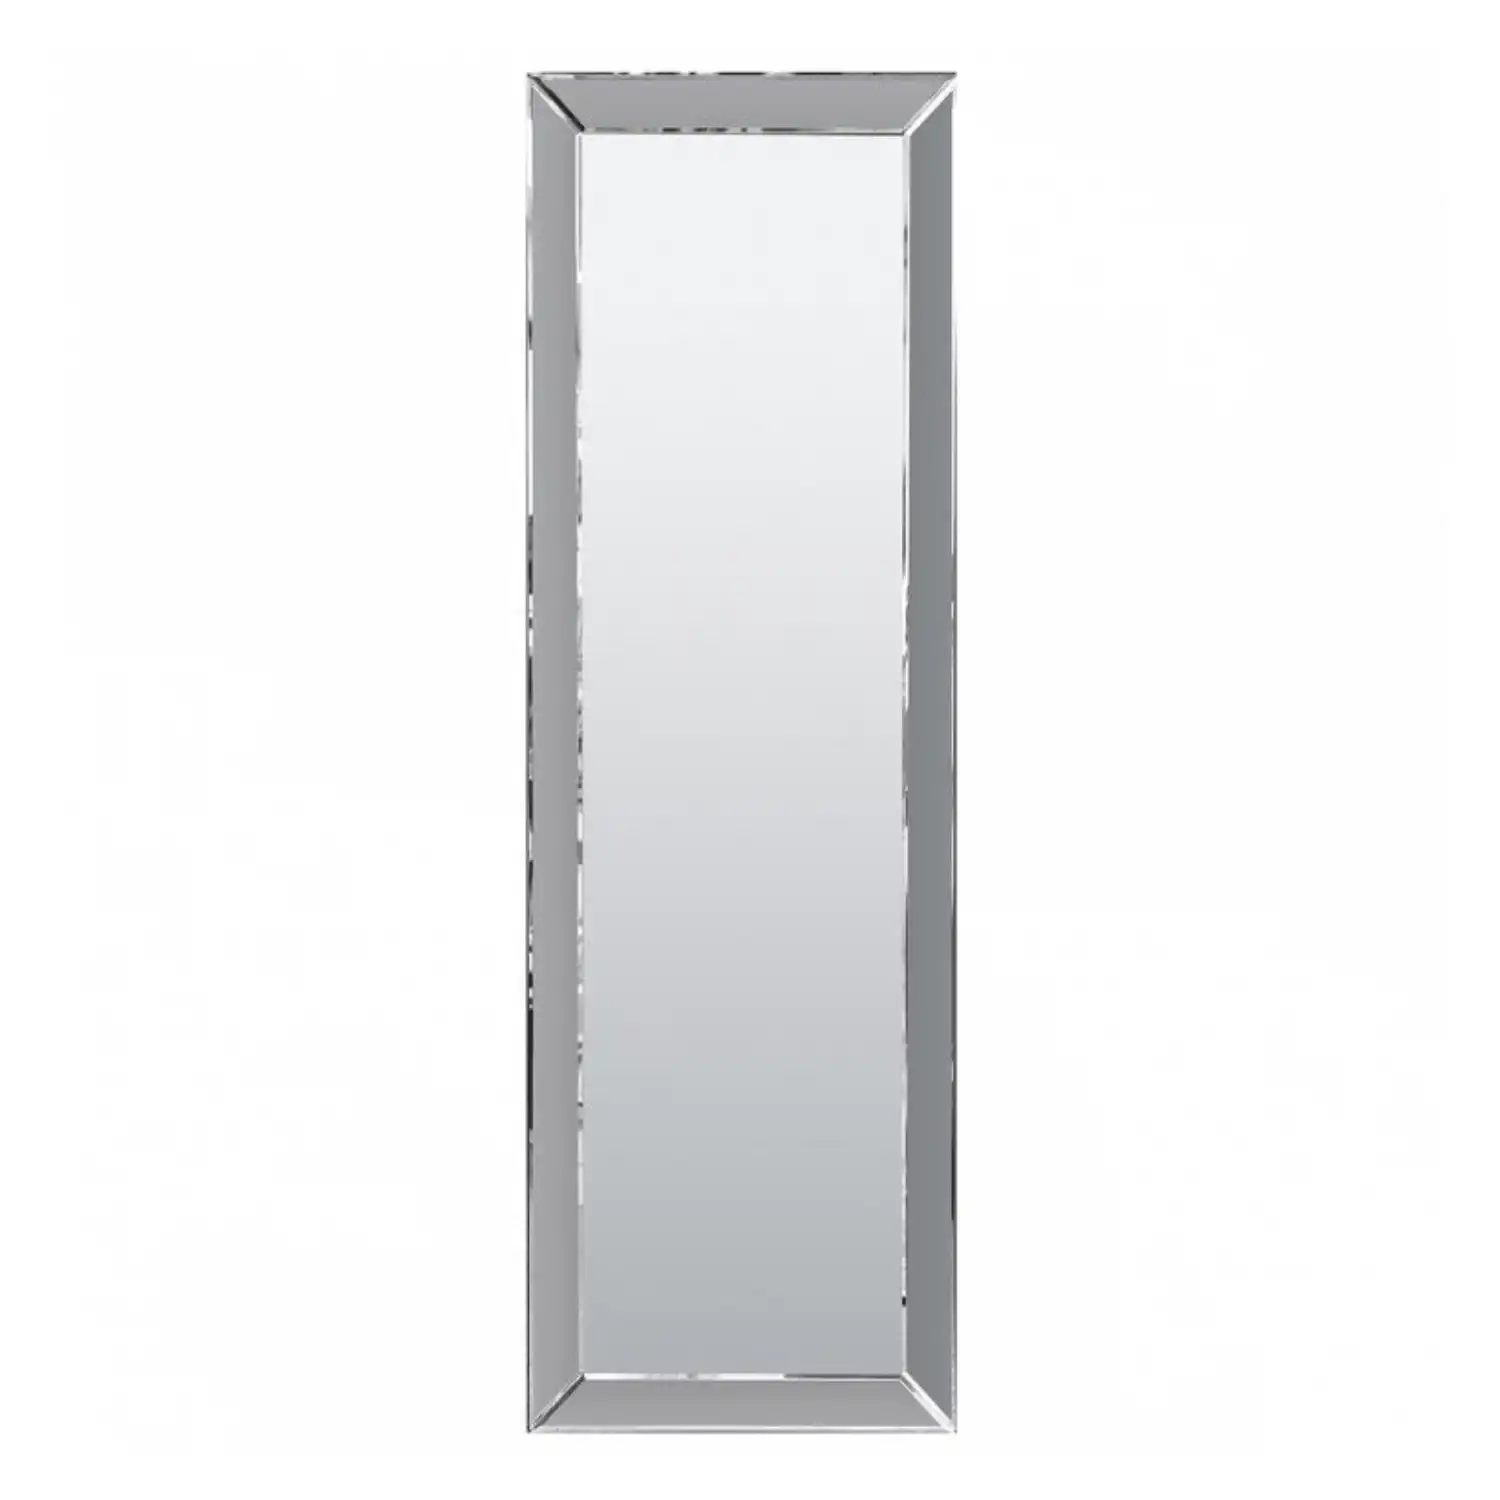 Mirror Euro Grey